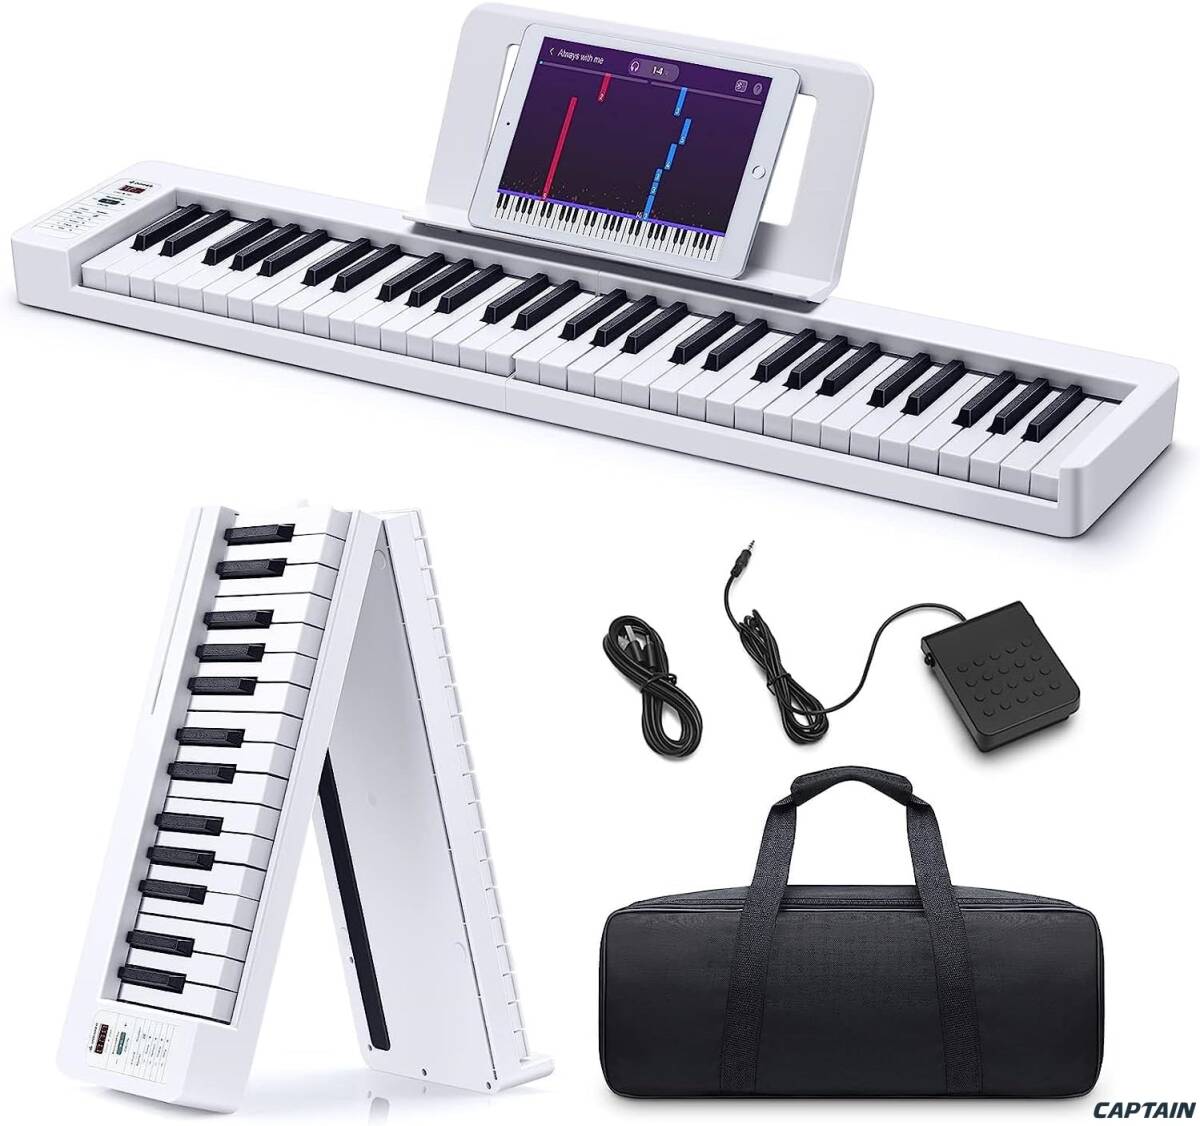  электронное пианино 61 клавиатура складной клавиатура складной батарея встроенный длина час использование возможность MIDI соответствует Touch отклик функция легкий мобильный инструкция по эксплуатации 